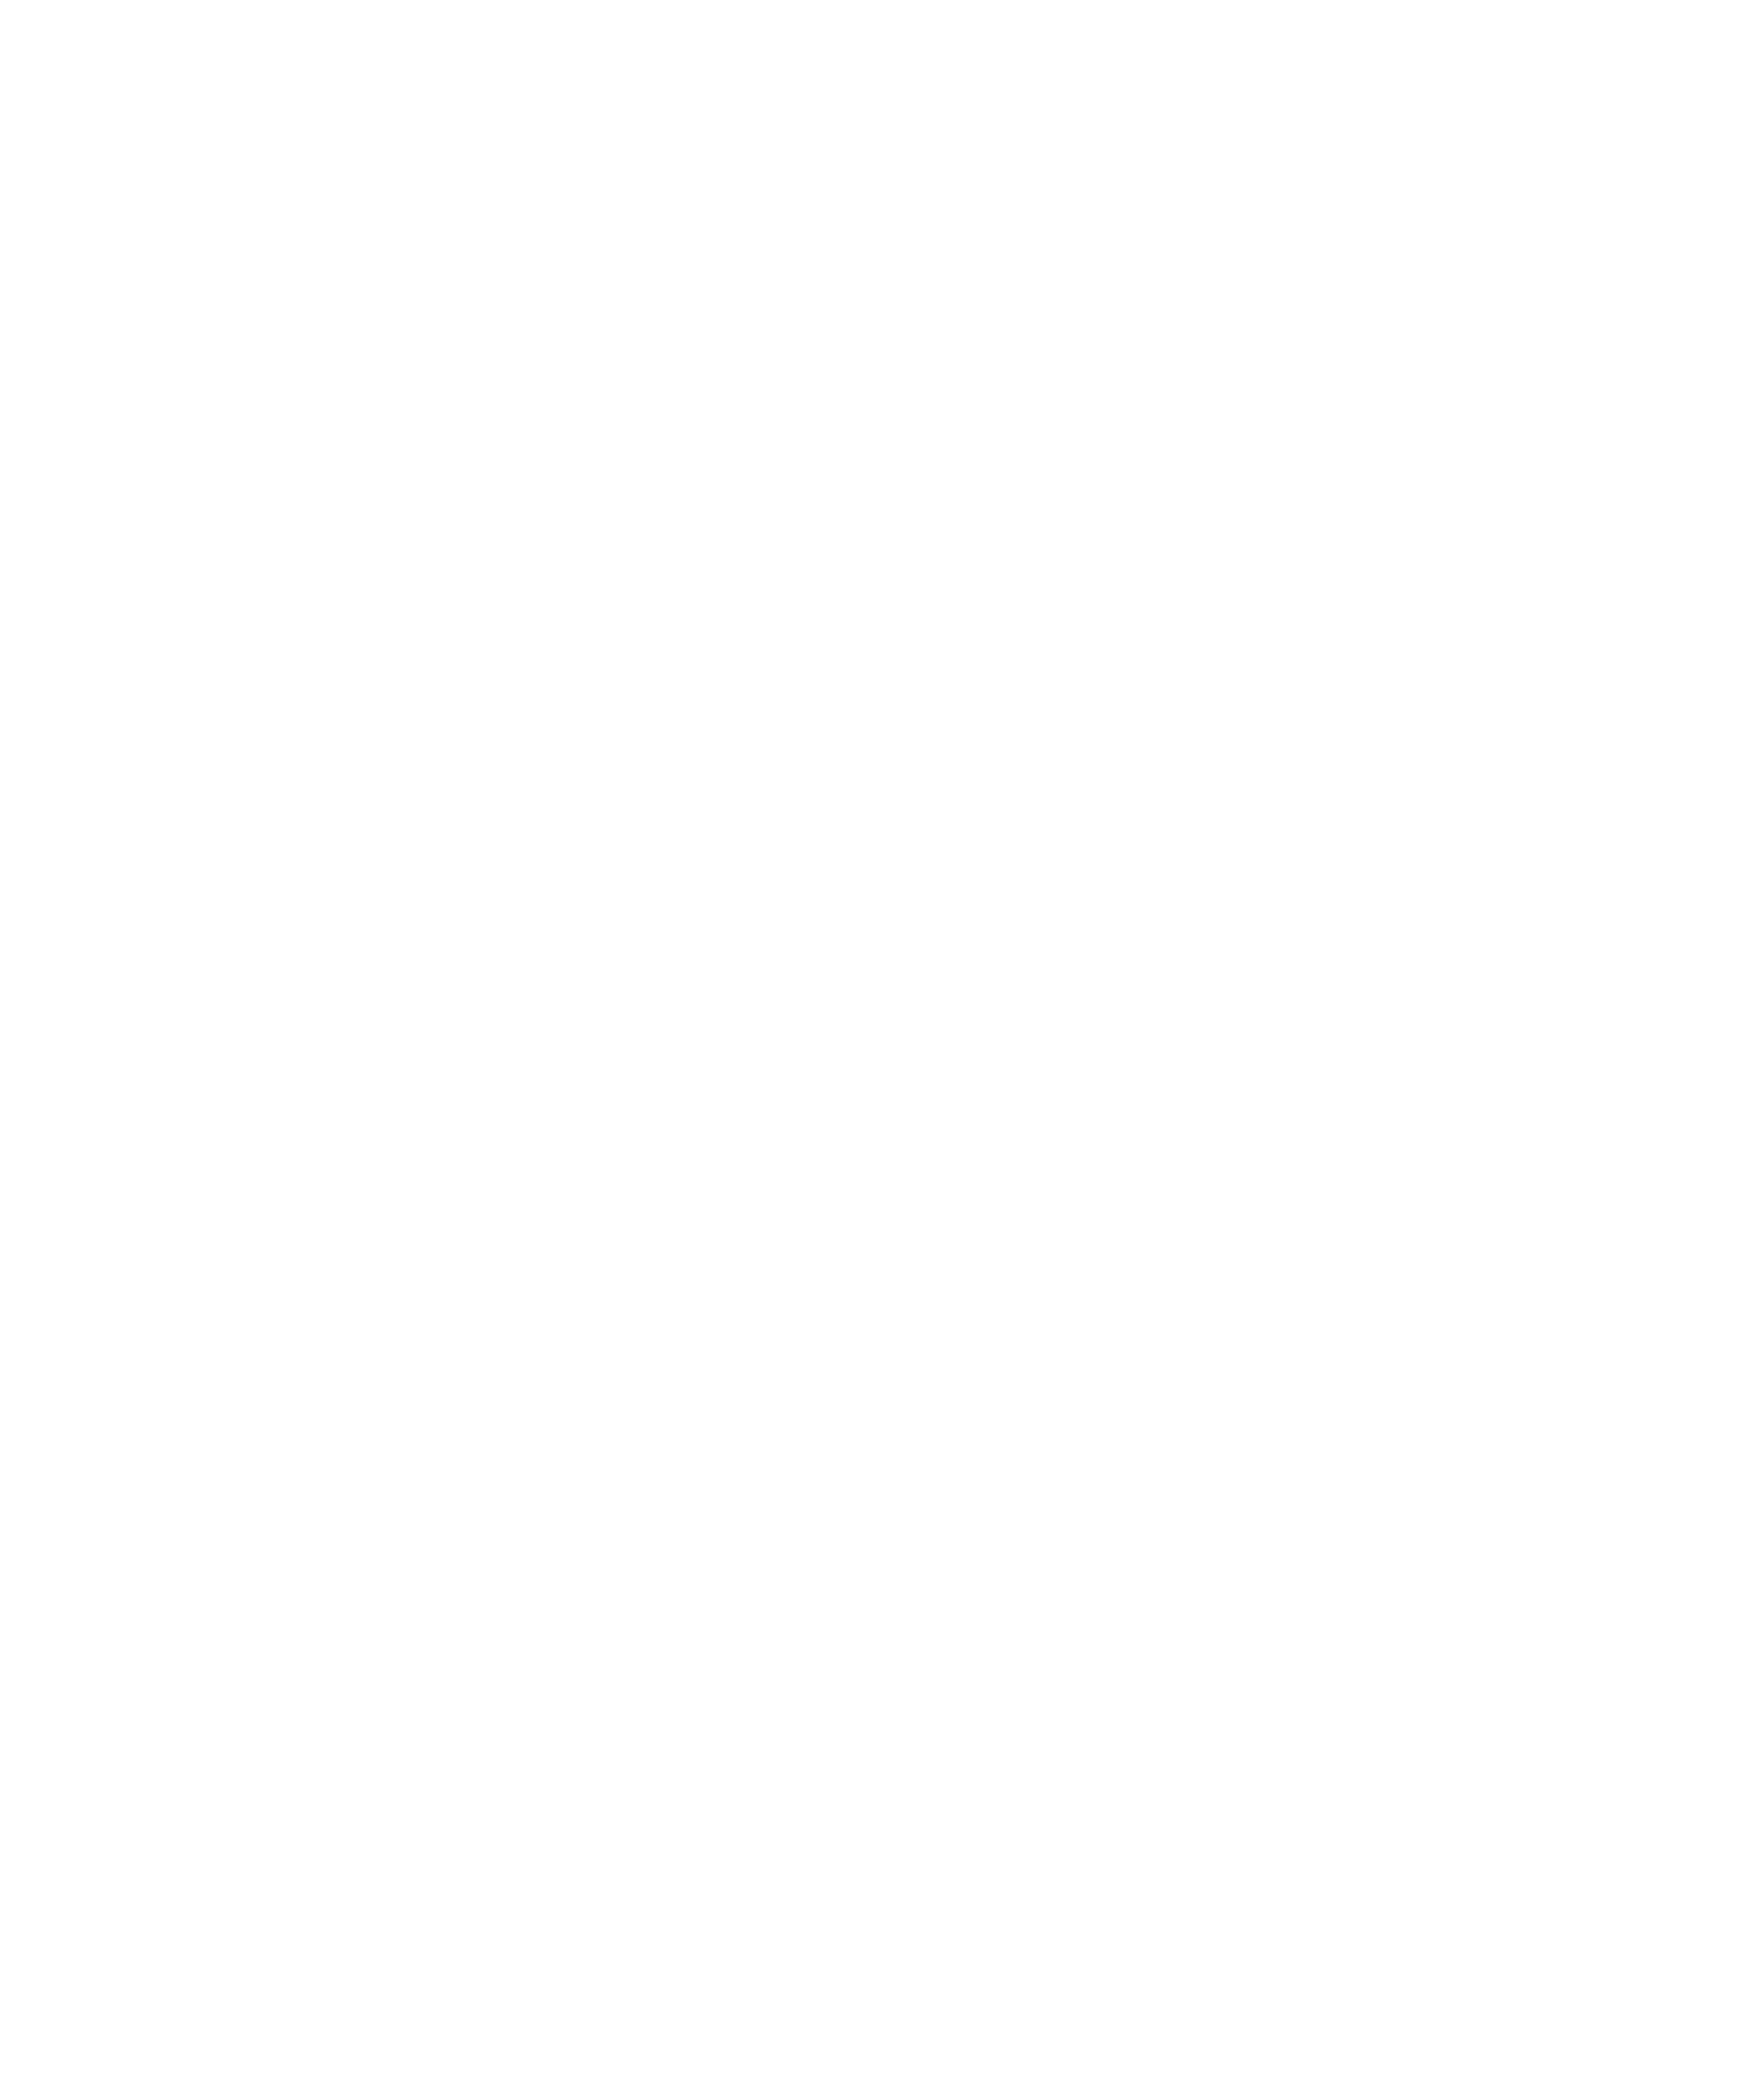 travelers choice trip advisor logo